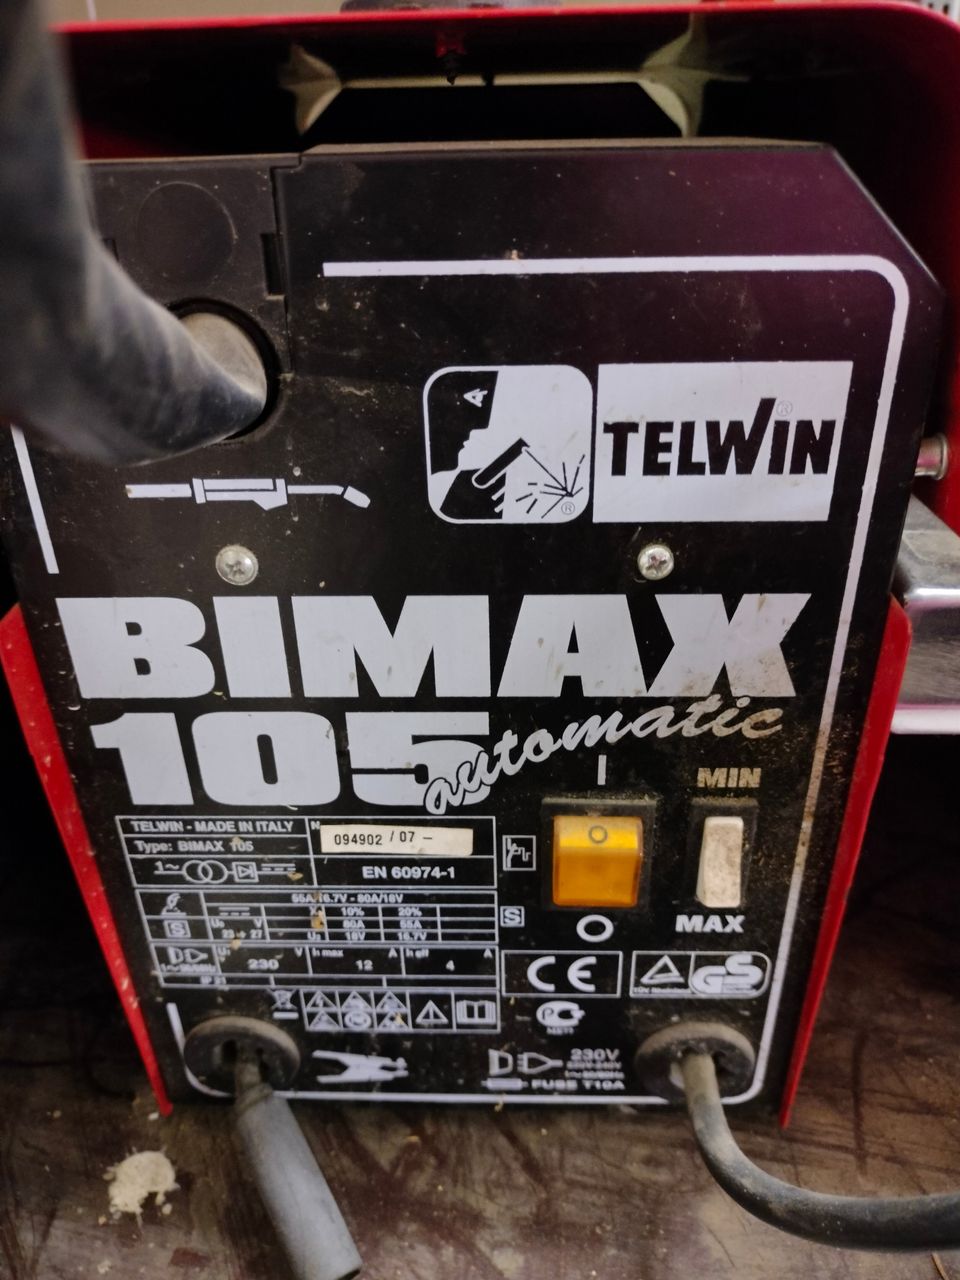 Hitsauskone BIMAX 105 ja hitsauskypärä